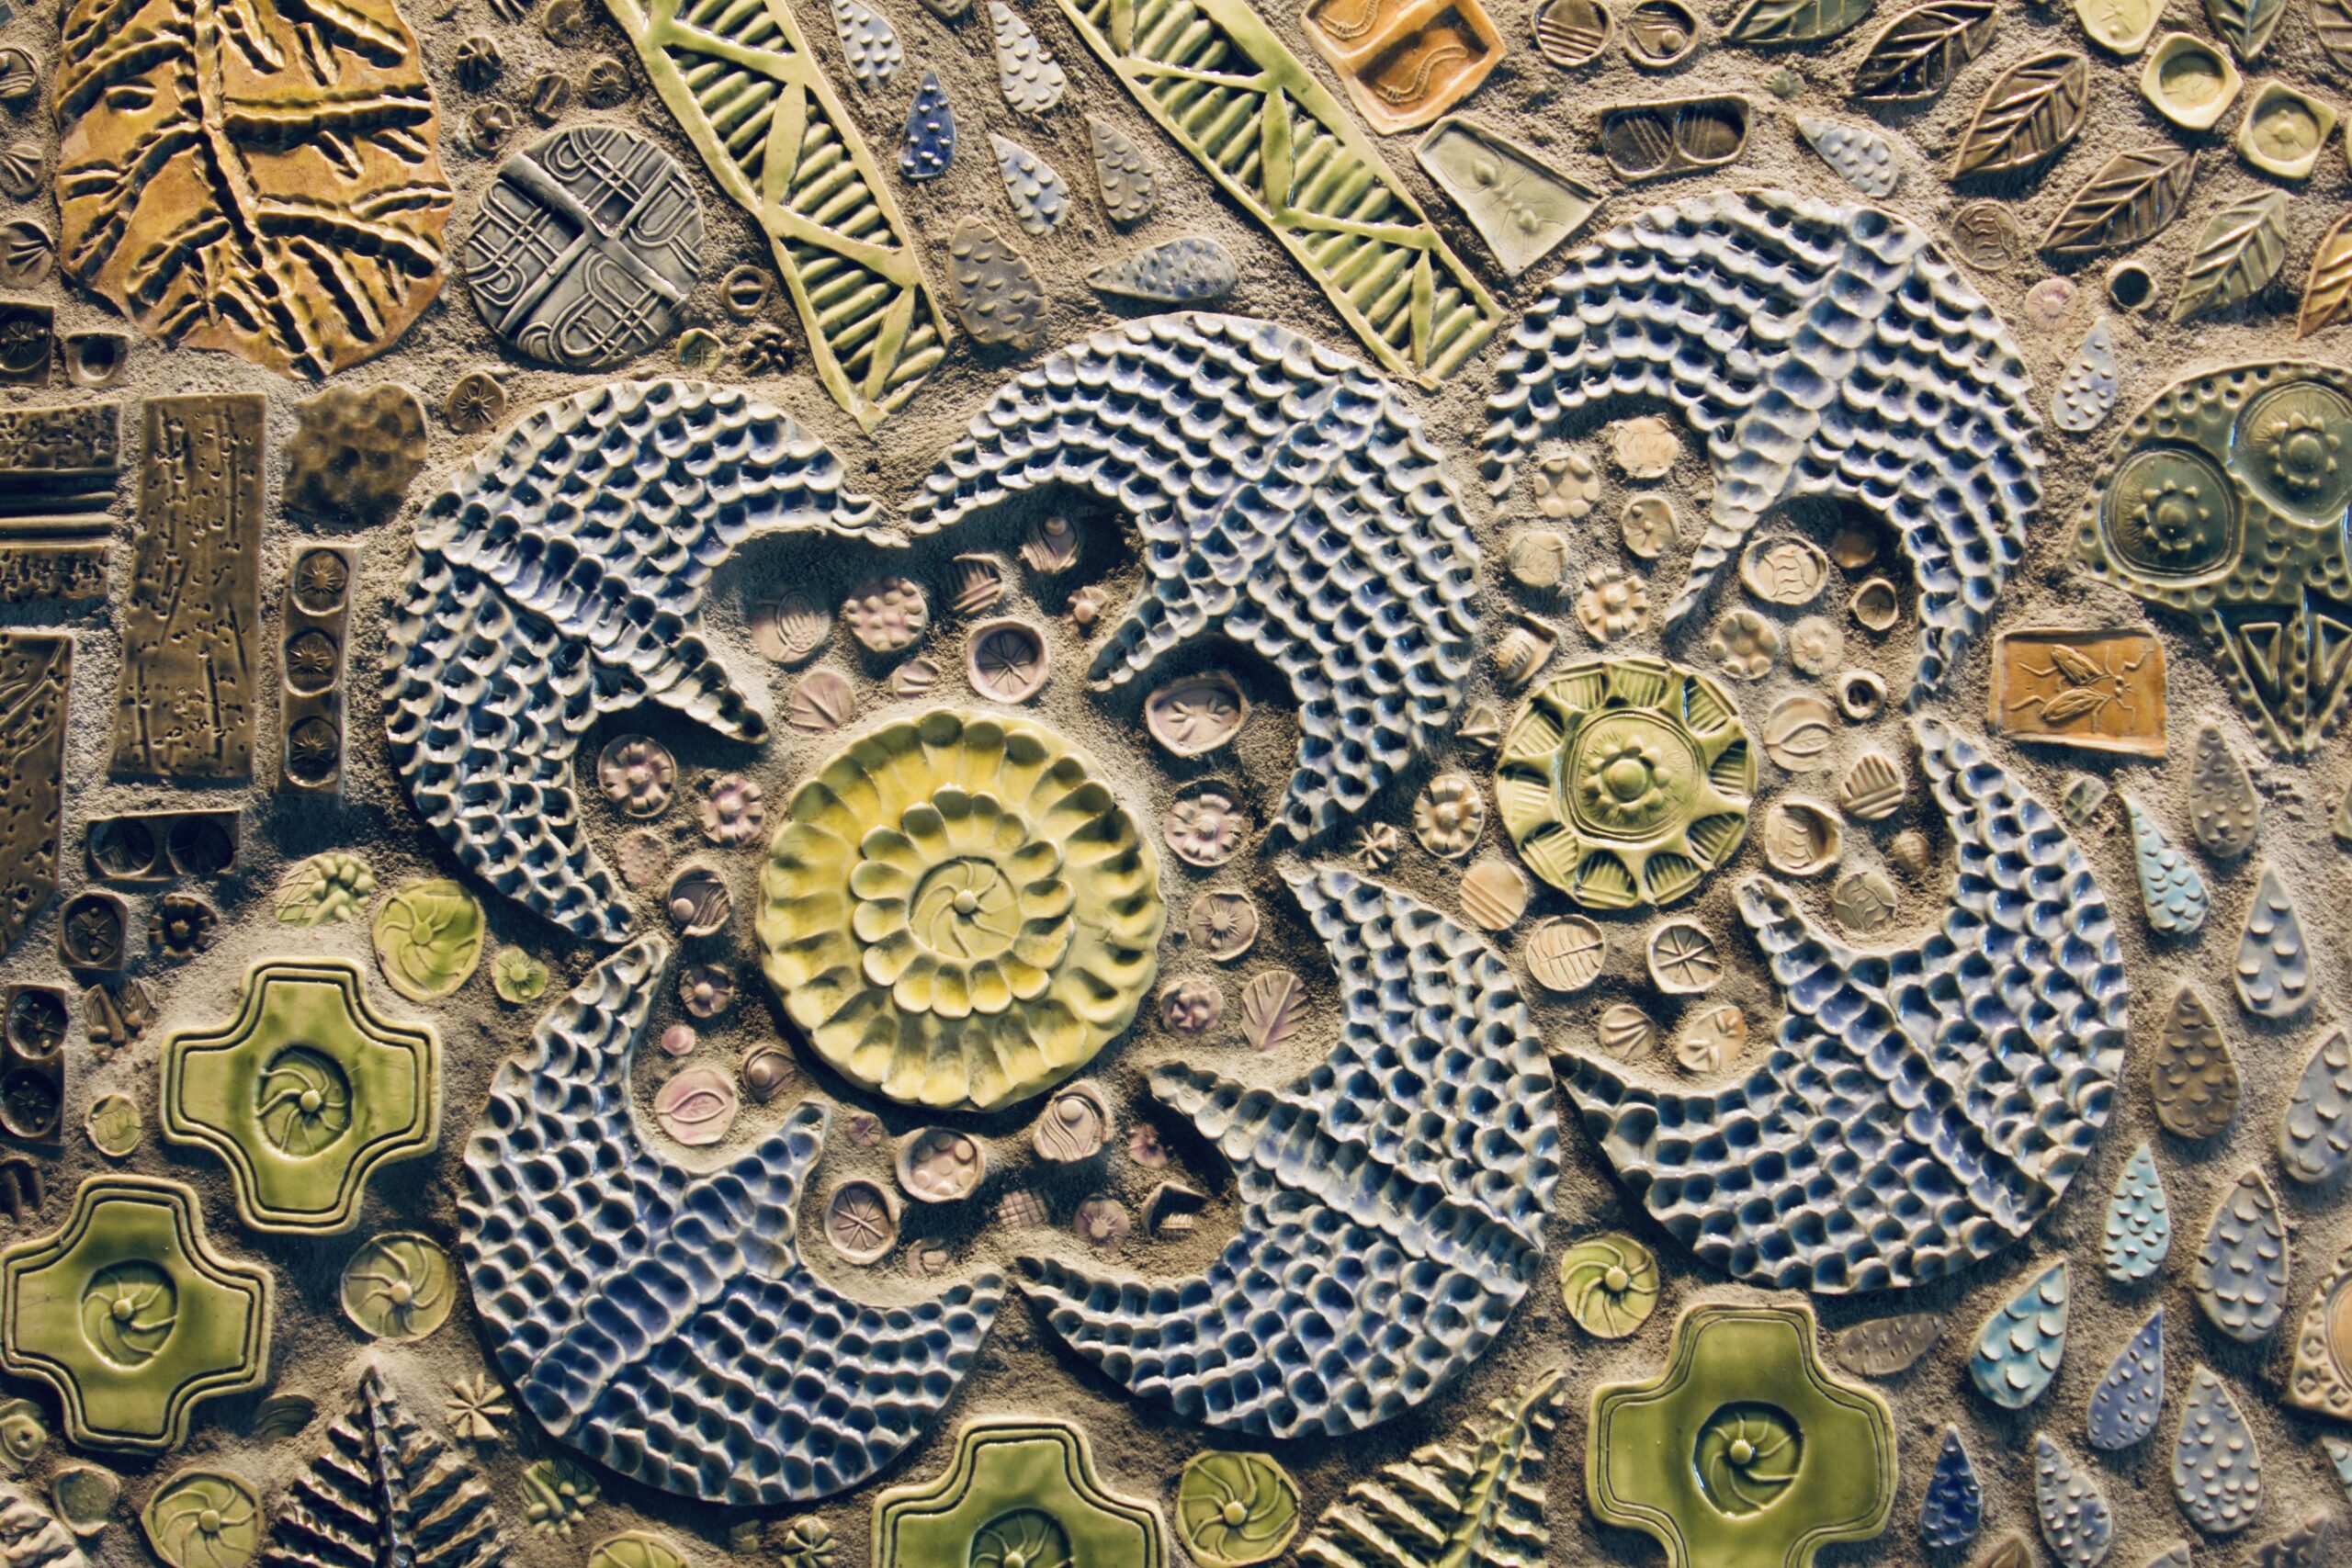 Handmade ceramic tile mosaic